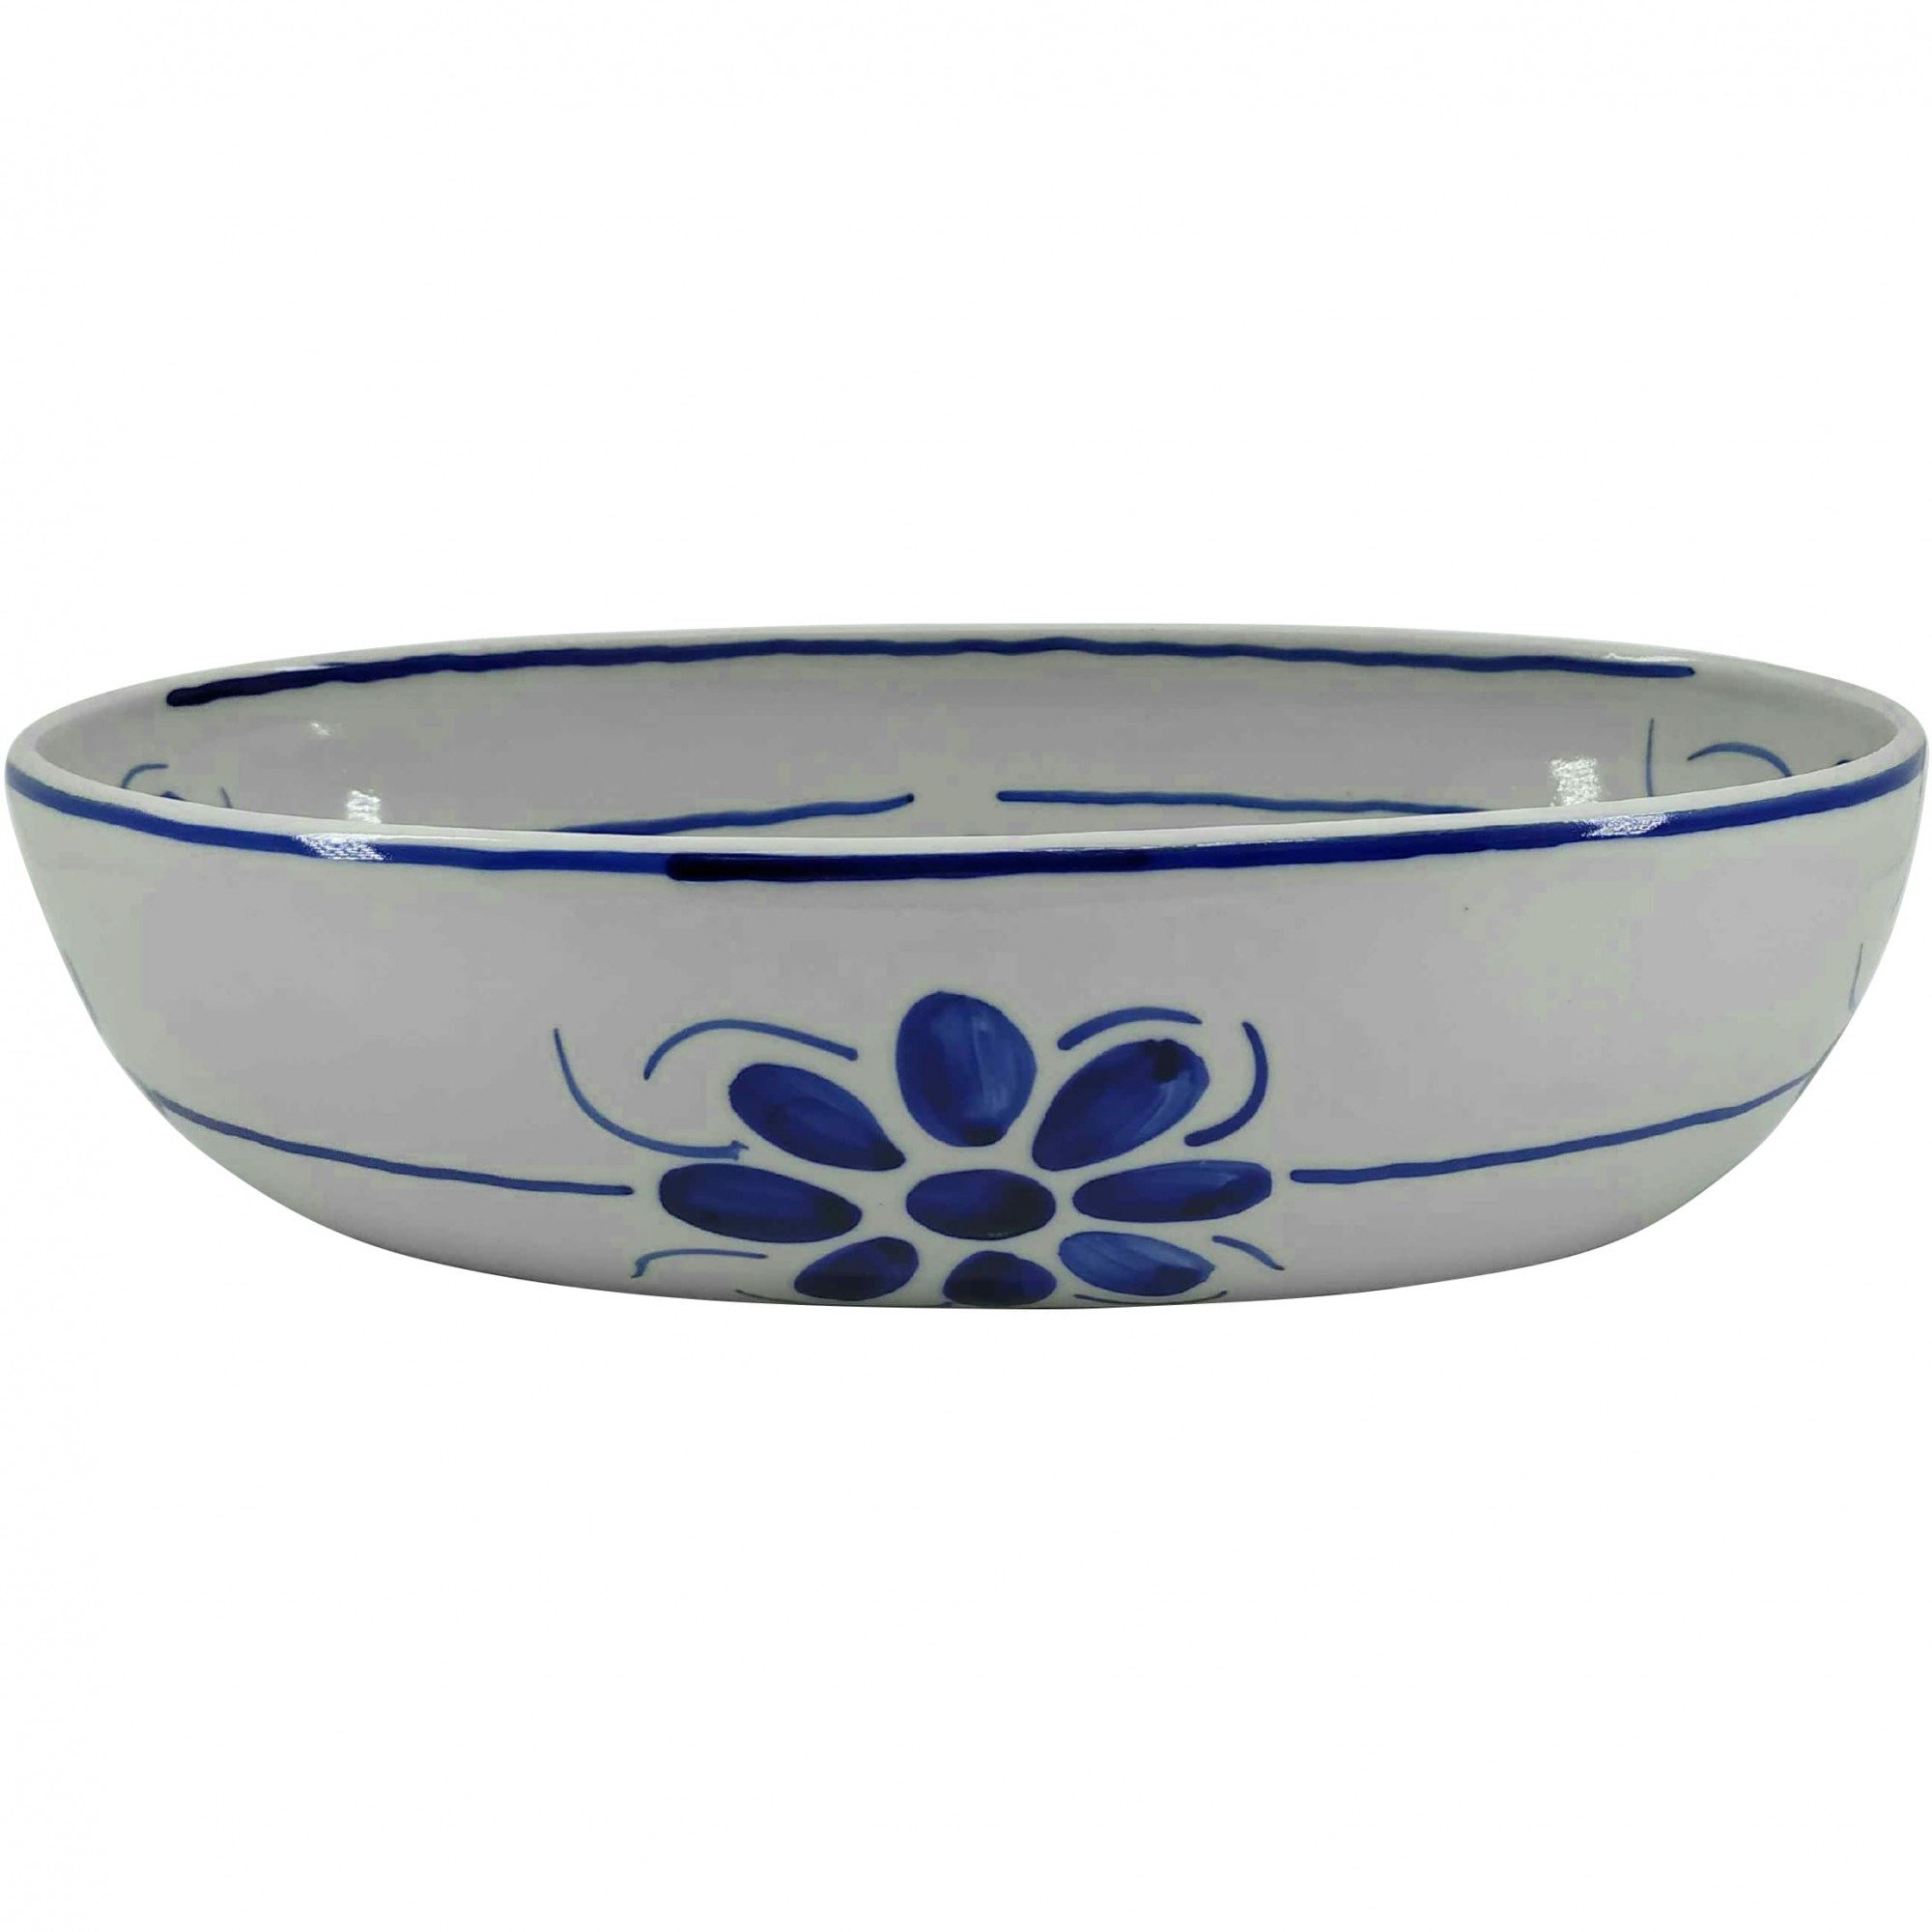 Jogo de Travessas Em Porcelana Azul e Branca Floral - 4 peças - 2